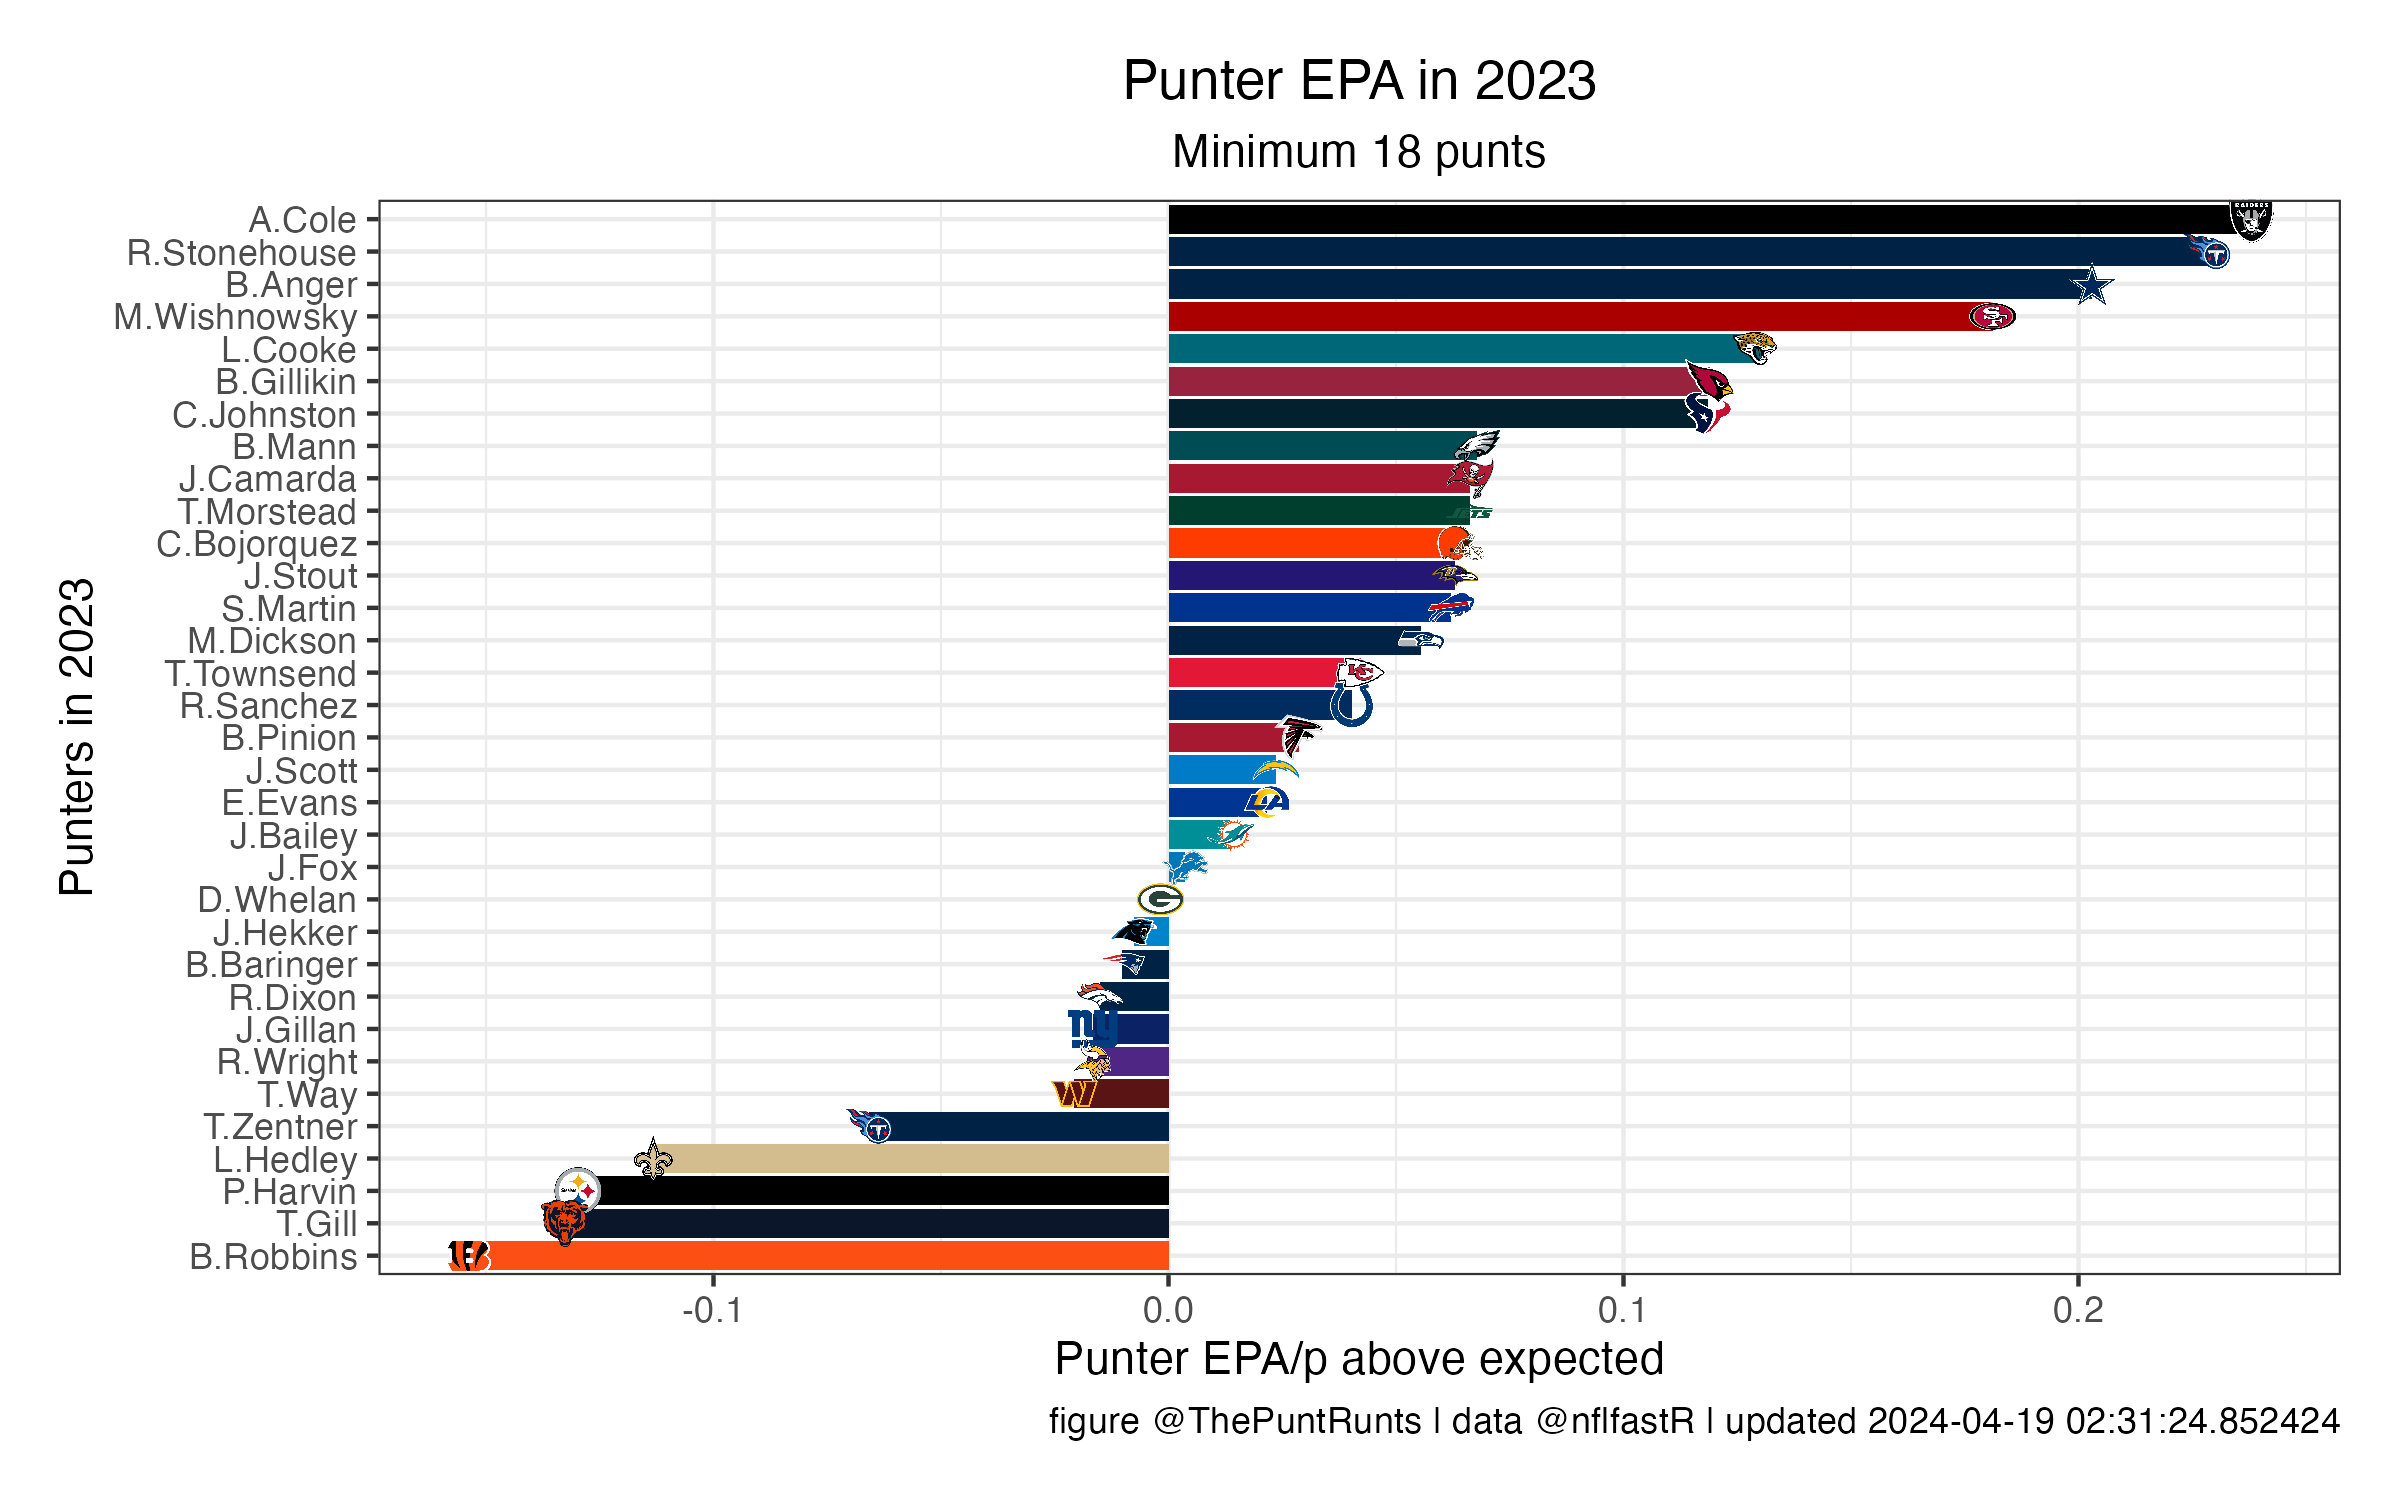 EPA so far in 2022